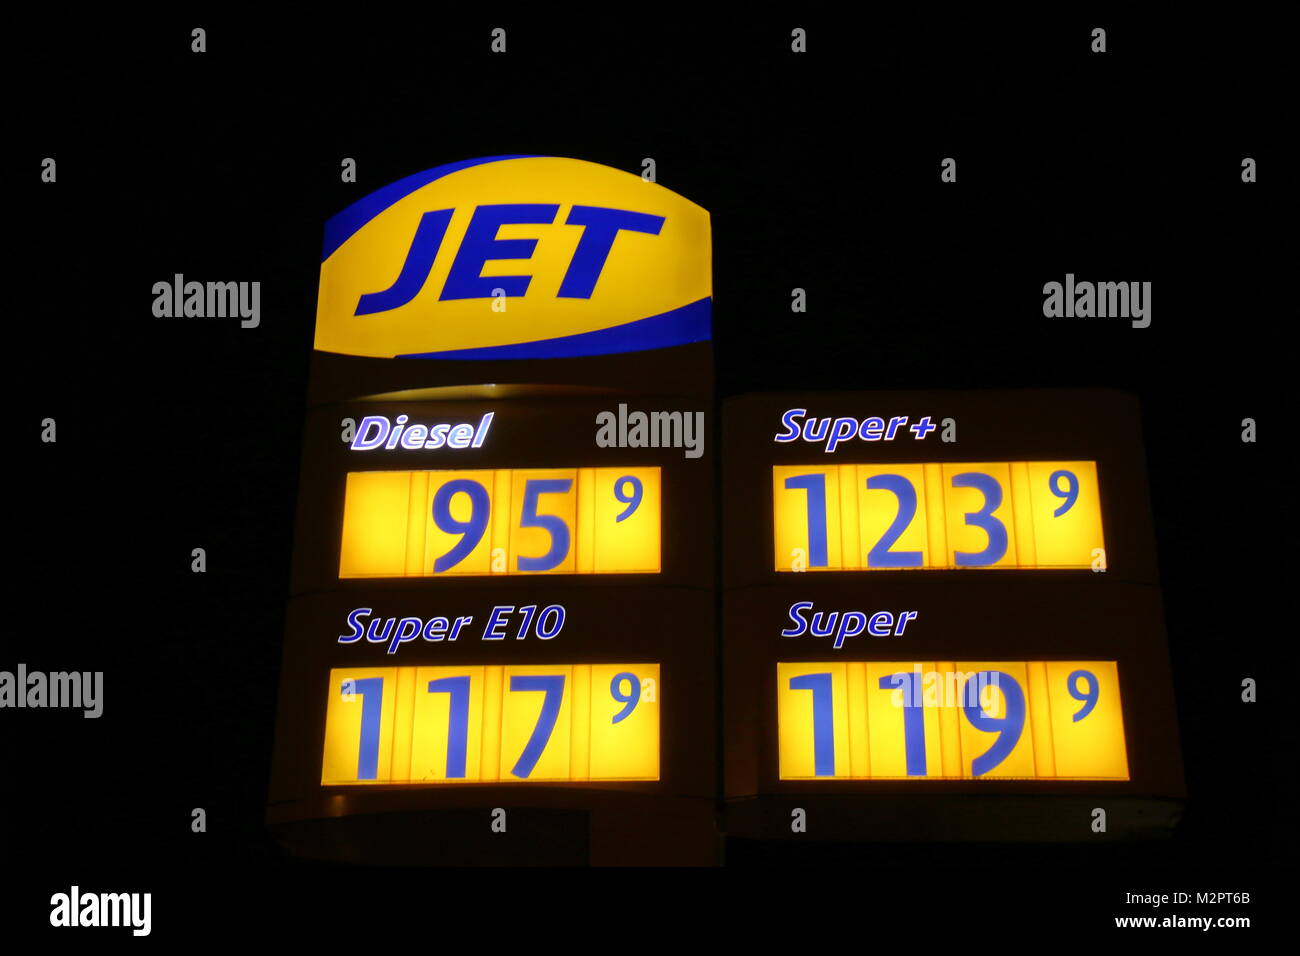 Tankstelle mit Preistafel - Spritpreise auf Jahrestief.  Die Autofahrer dürfen sich freuen, auch zum Jahreswechsel lagen die Spritpreise auf einem Jahrestief. Stock Photo